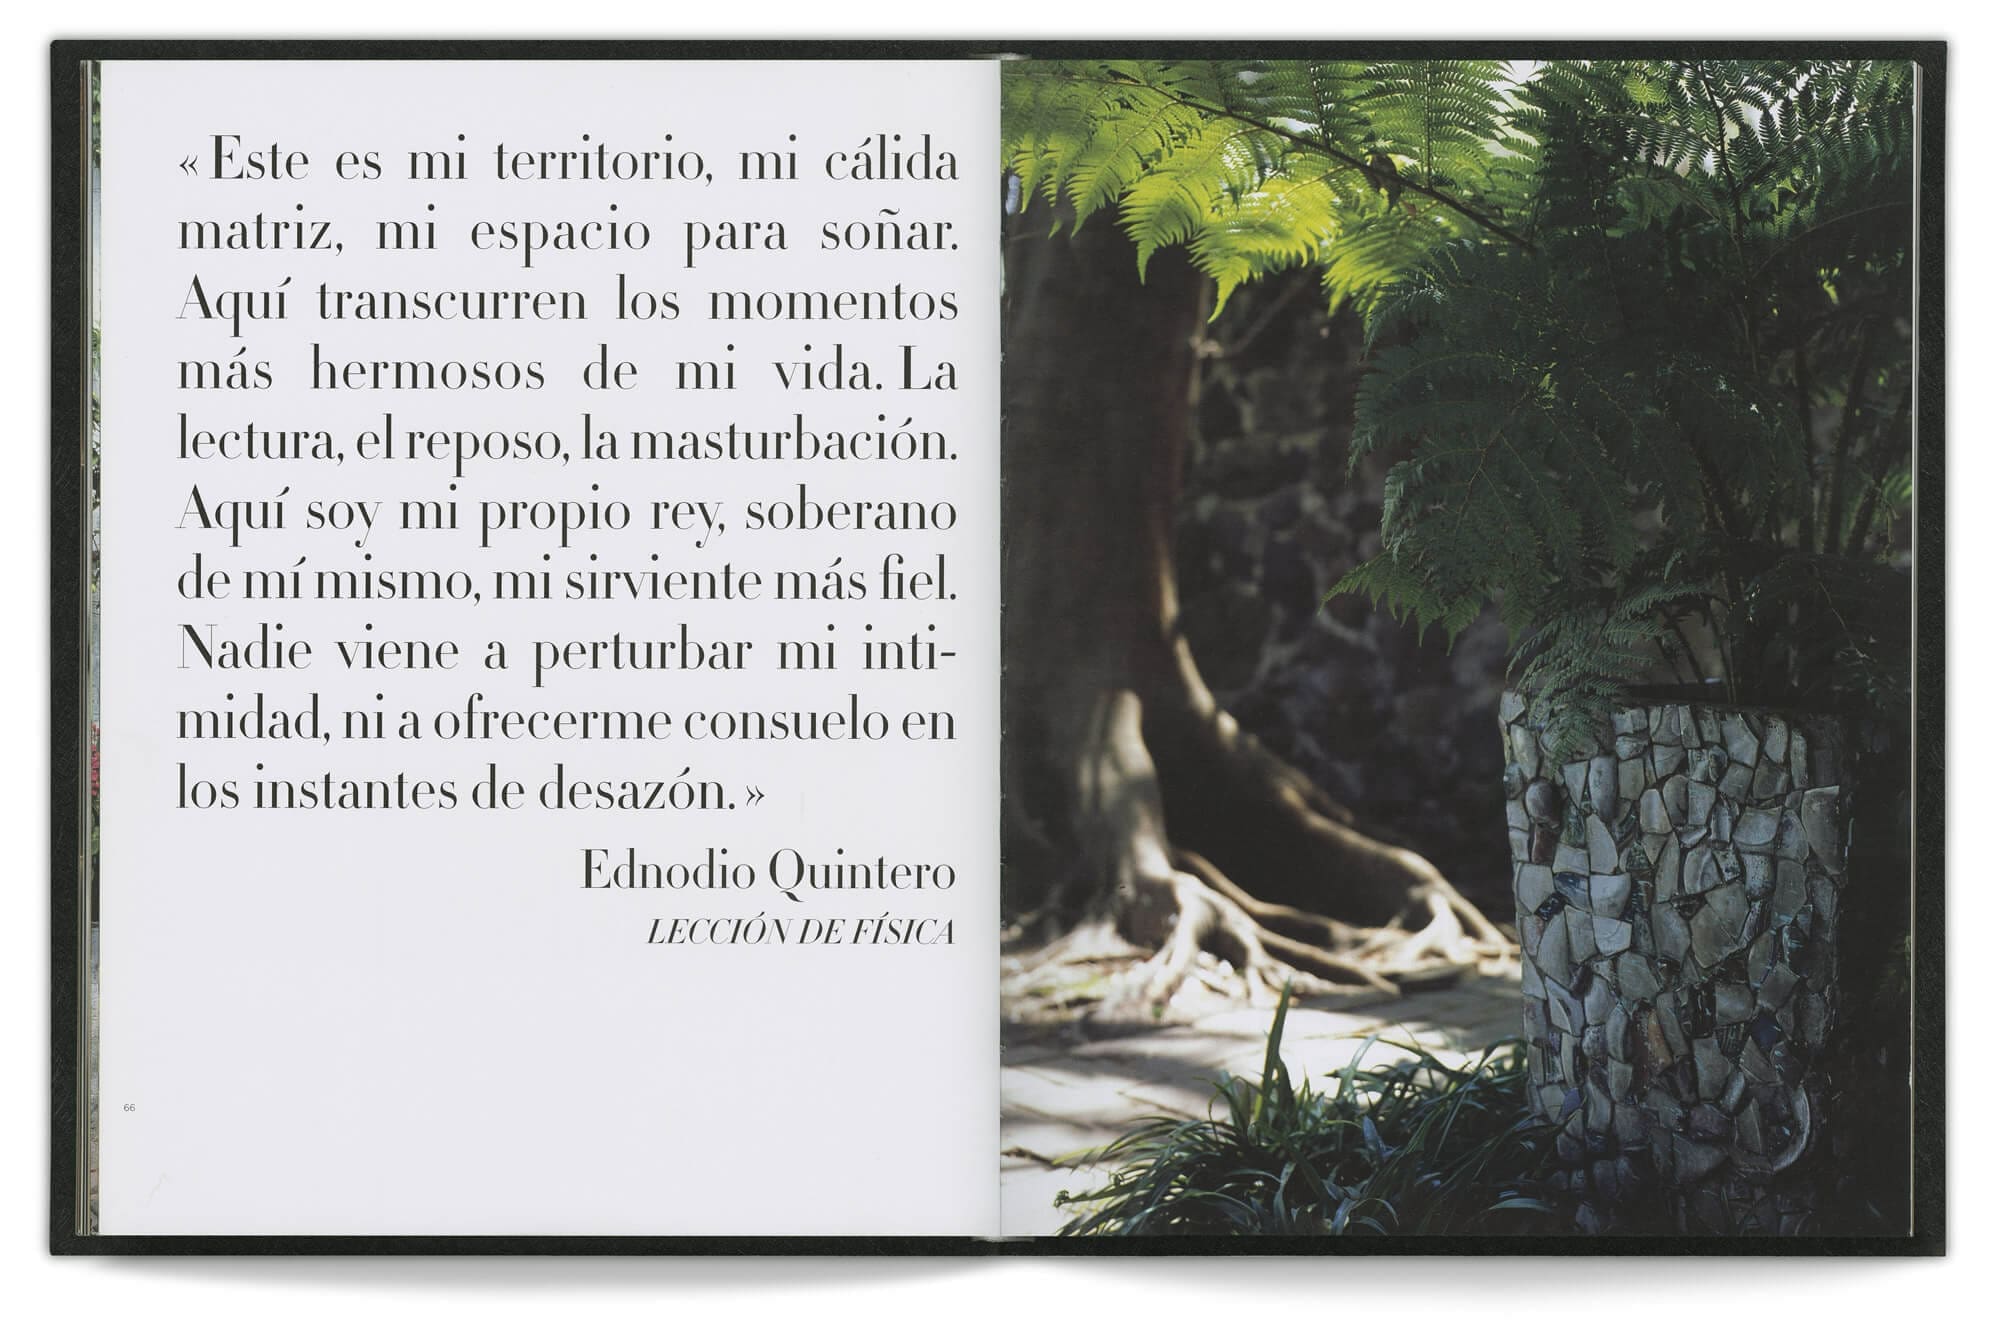 Double page présentant une citation d'Ednodio Quintero avec une photo de nature, design IchetKar